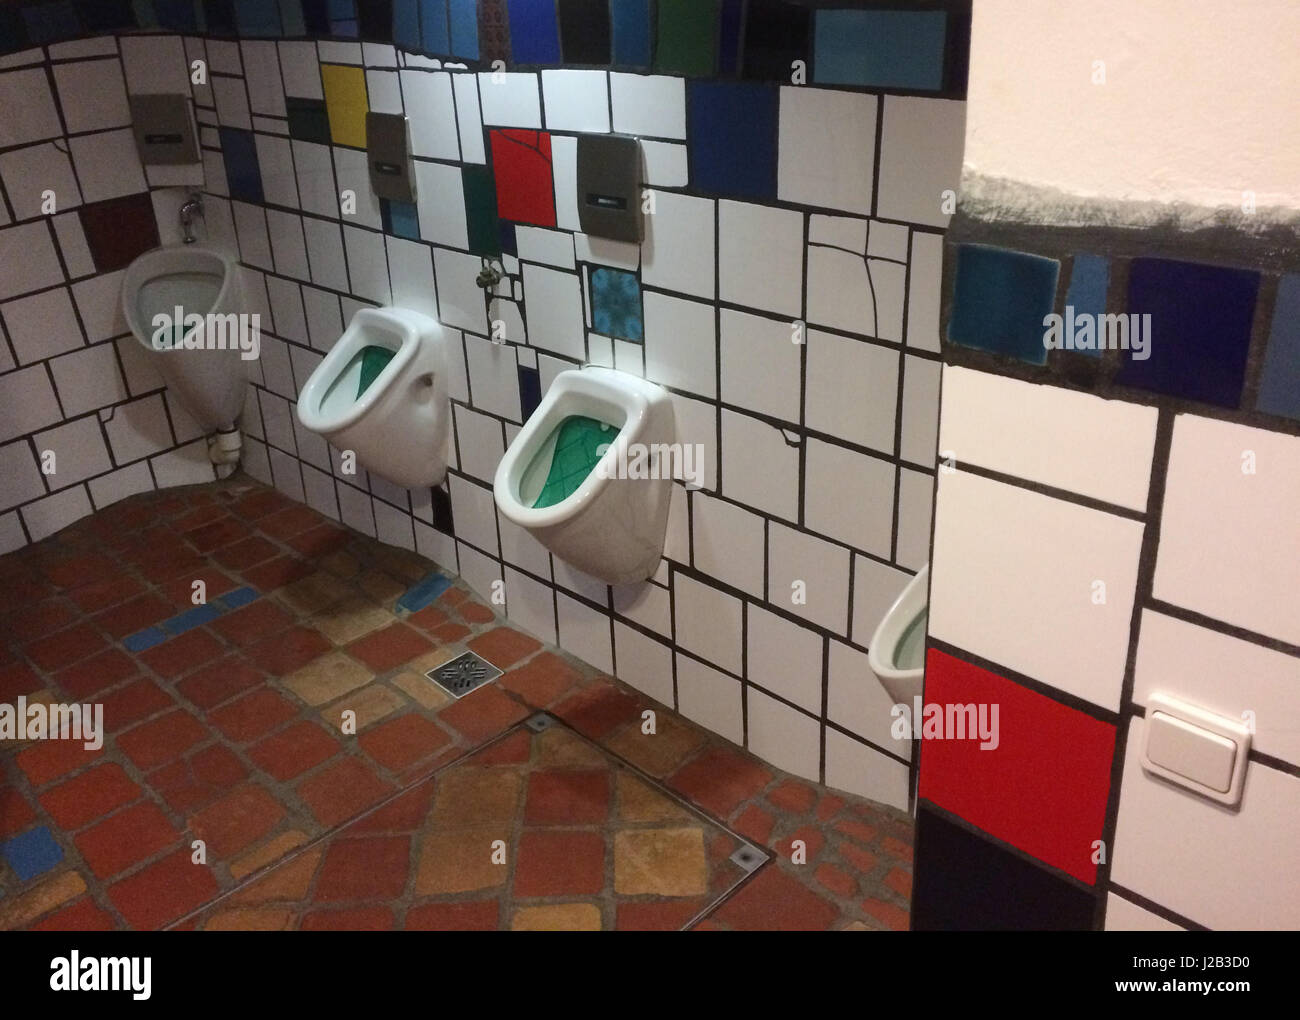 Urinale in der männlichen Toilette entworfen von dem österreichischen Künstler und Architekten Friedensreich Hundertwasser im KunstHausWien in Wien, Österreich. Stockfoto